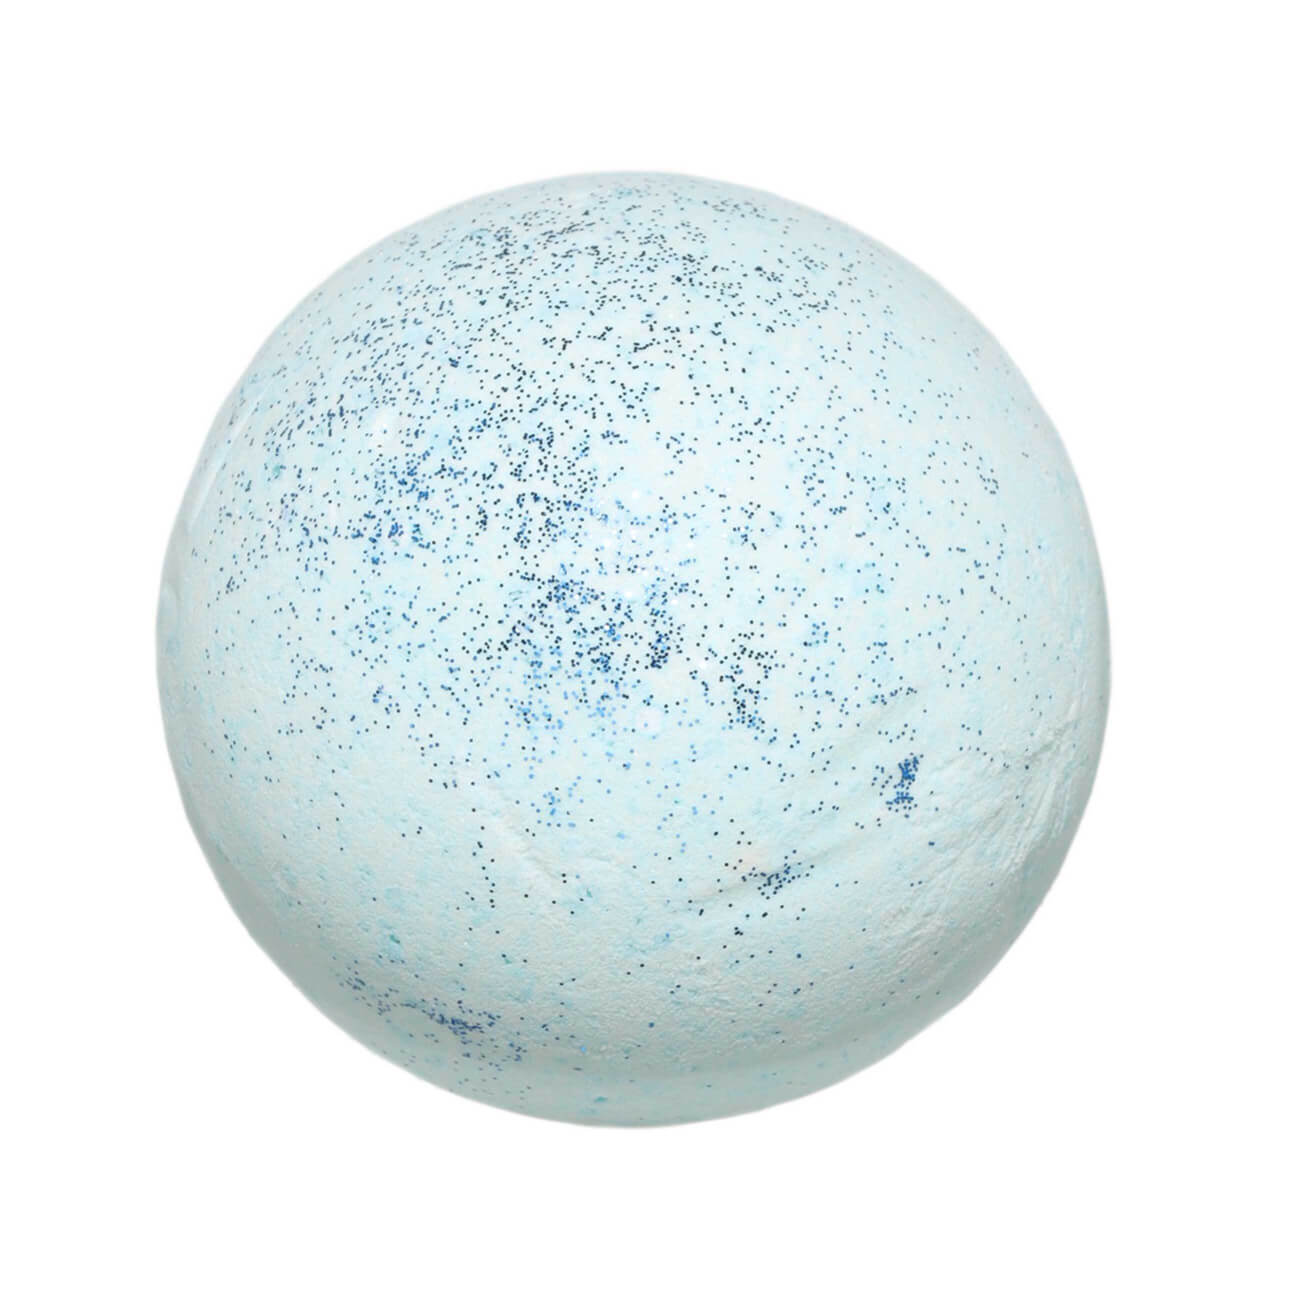 Бомбочка для ванны, 130 гр, с блестками, Ягодный аромат, голубая, Шар, Sparkle body - фото 1